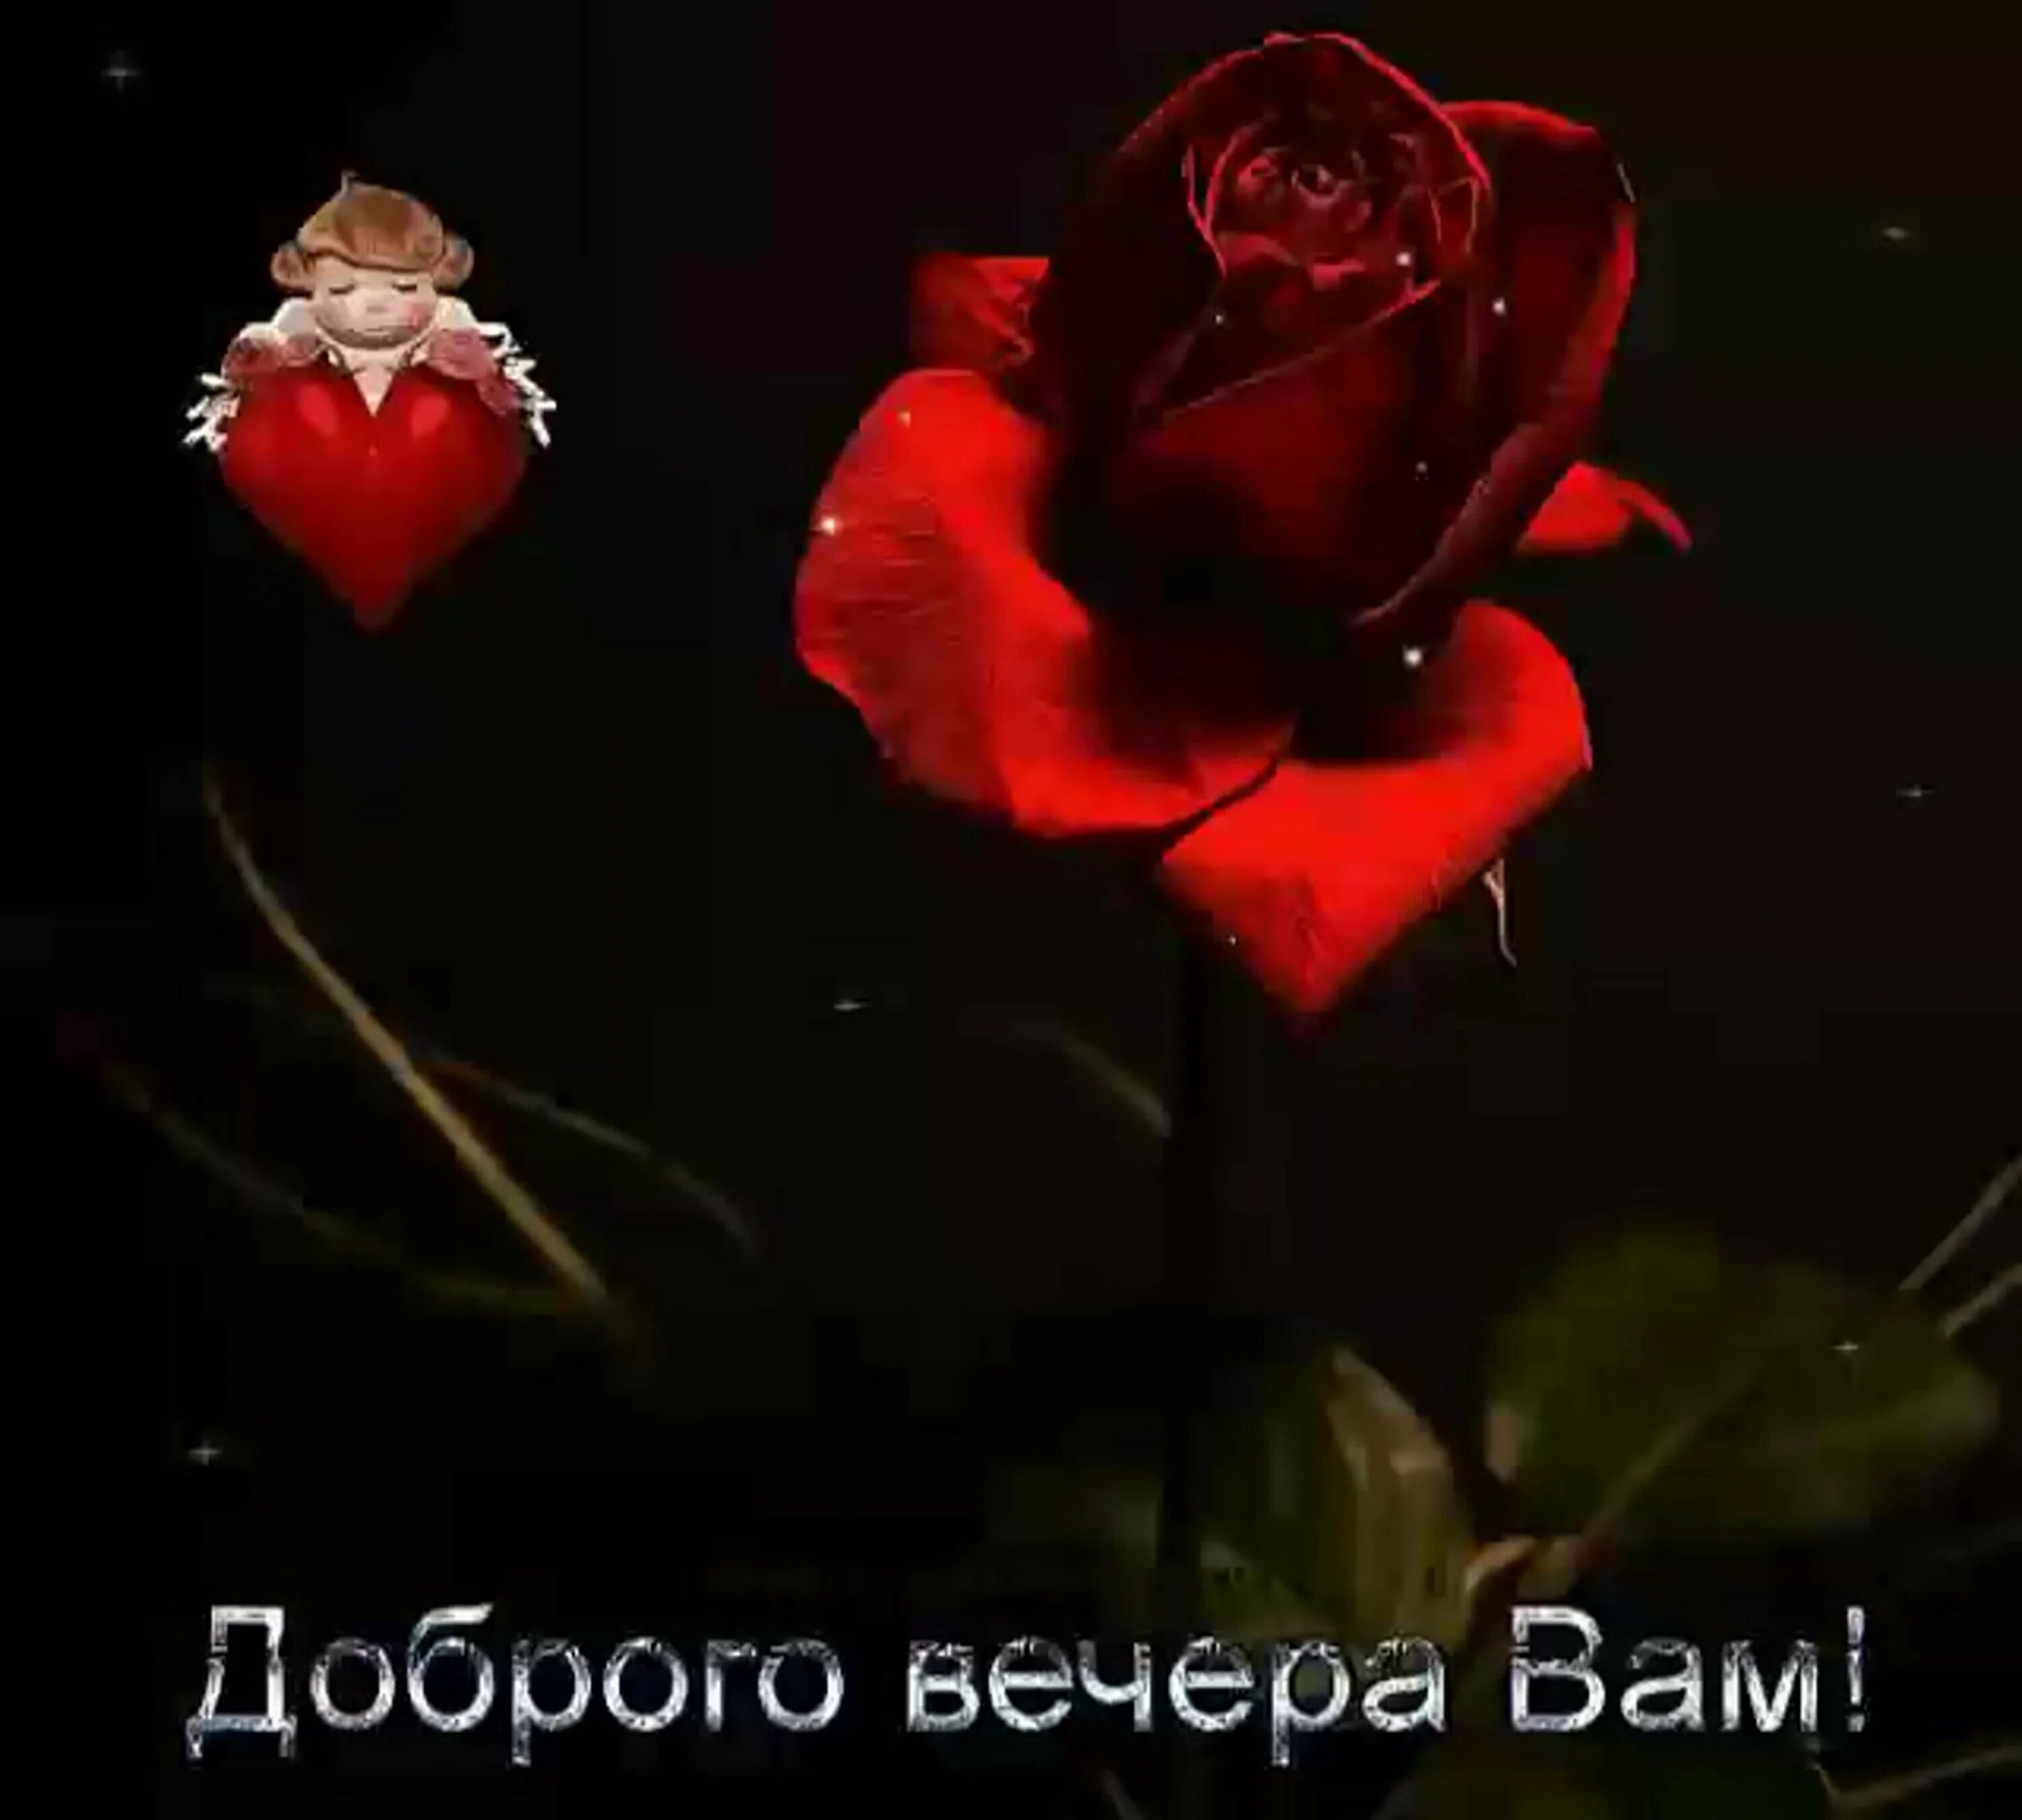 Добрый вечер сердце. Спокойной ночи цветы. Доброй ночи цветы. Доброй ночи с розами. Спокойной ночи красные розы.